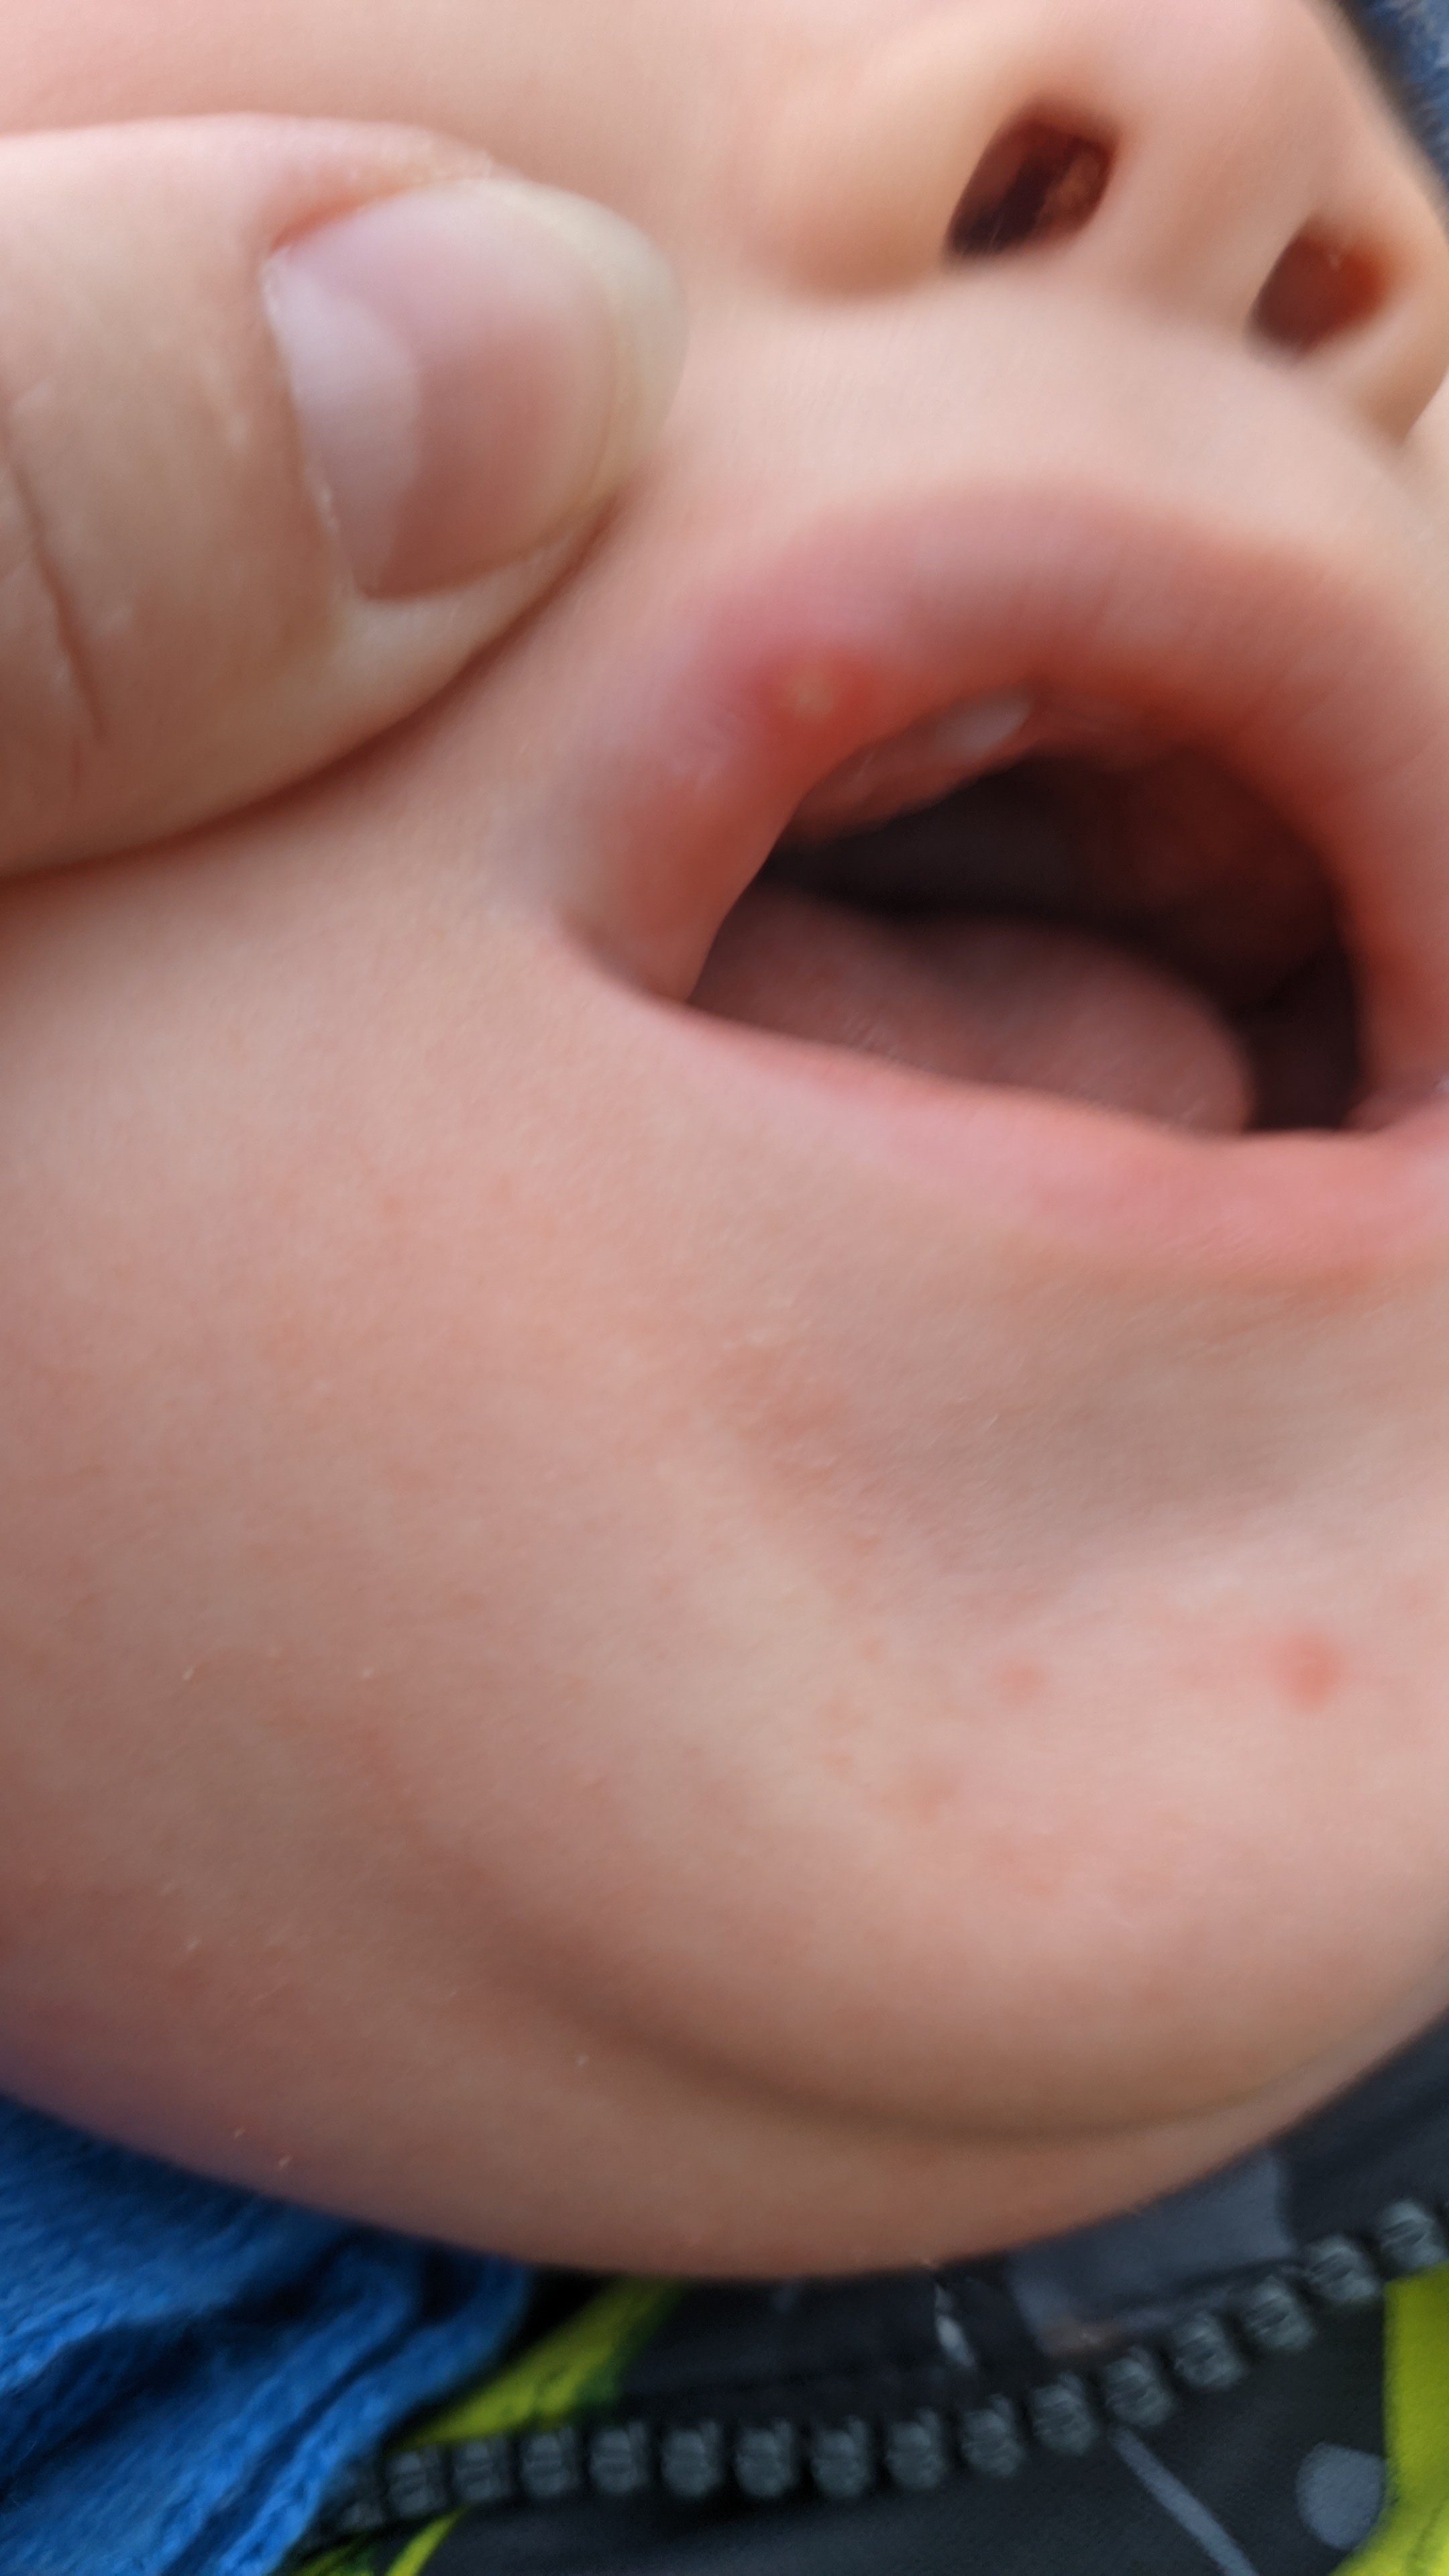 Девочки подскажите, можно прижечь зелёнкой на губе болячку внутри ребе... image №2